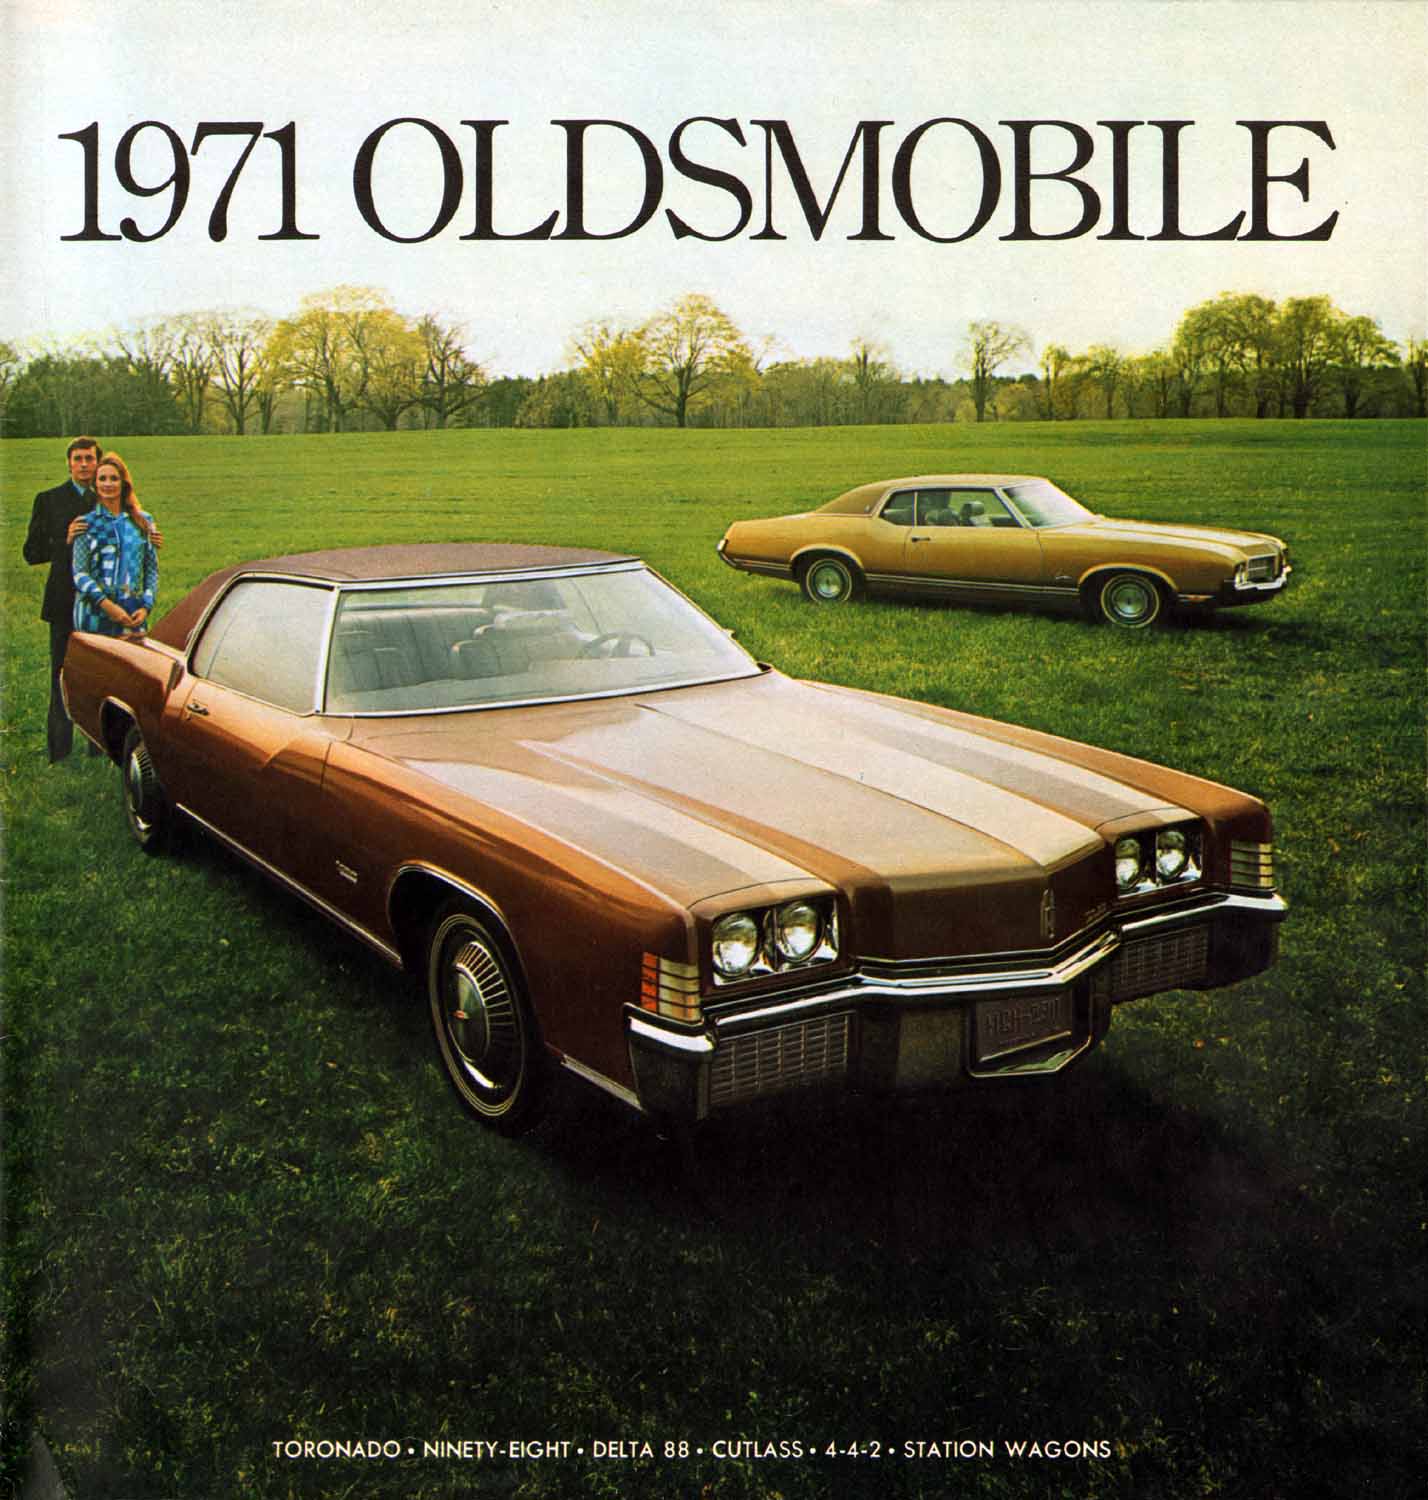 1971 Oldsmobile Prestige Brochure